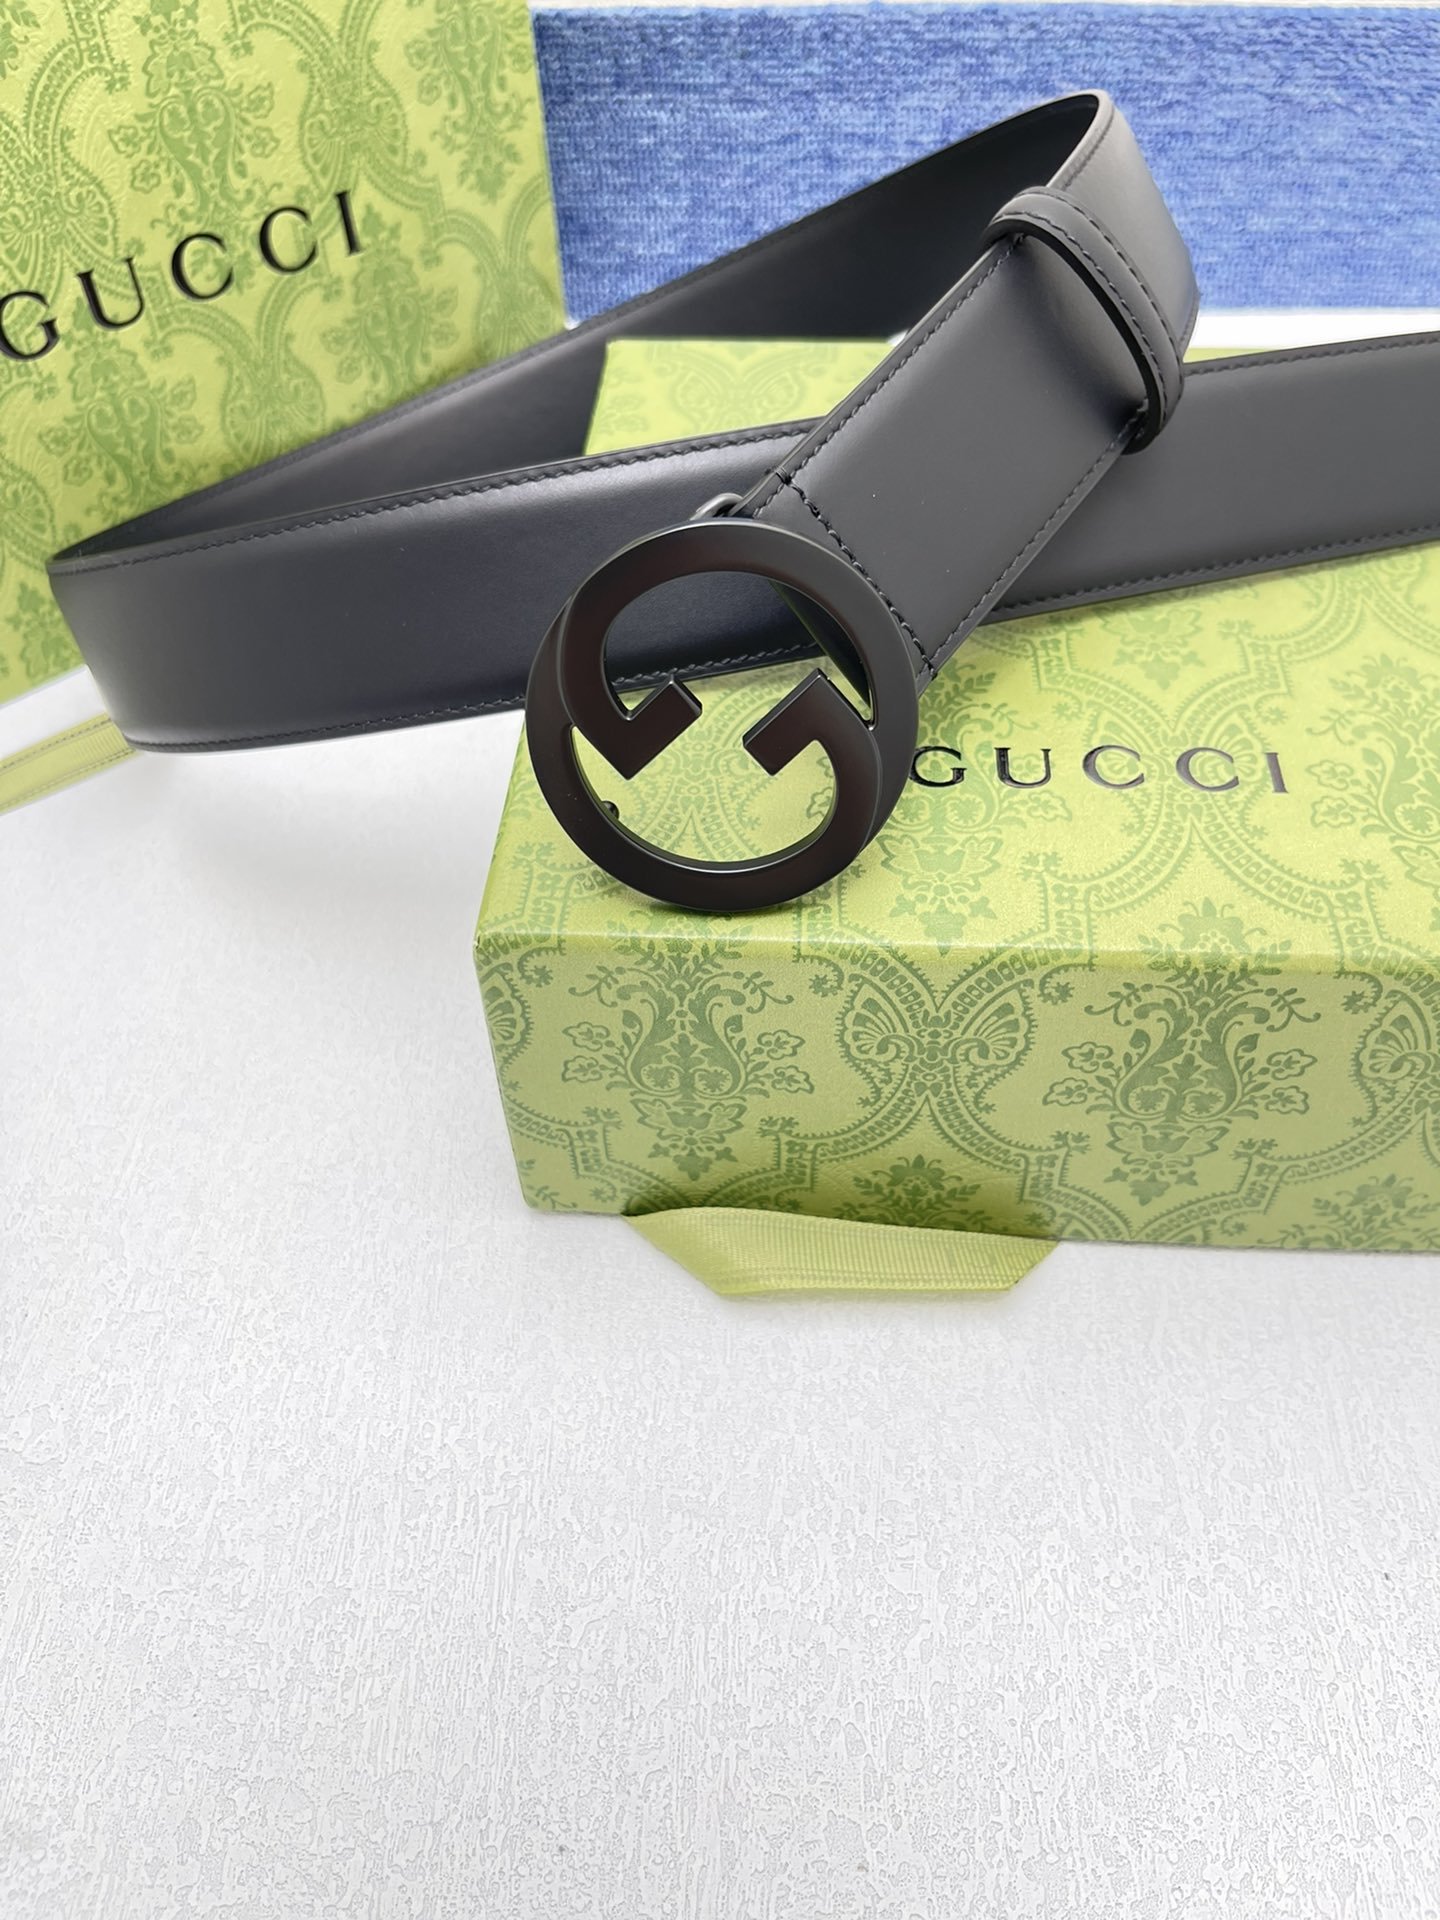 品牌古驰Gucci描述采用高级GucciSignature真皮精制而成触感厚实饰以双G商标带扣腰带为意大